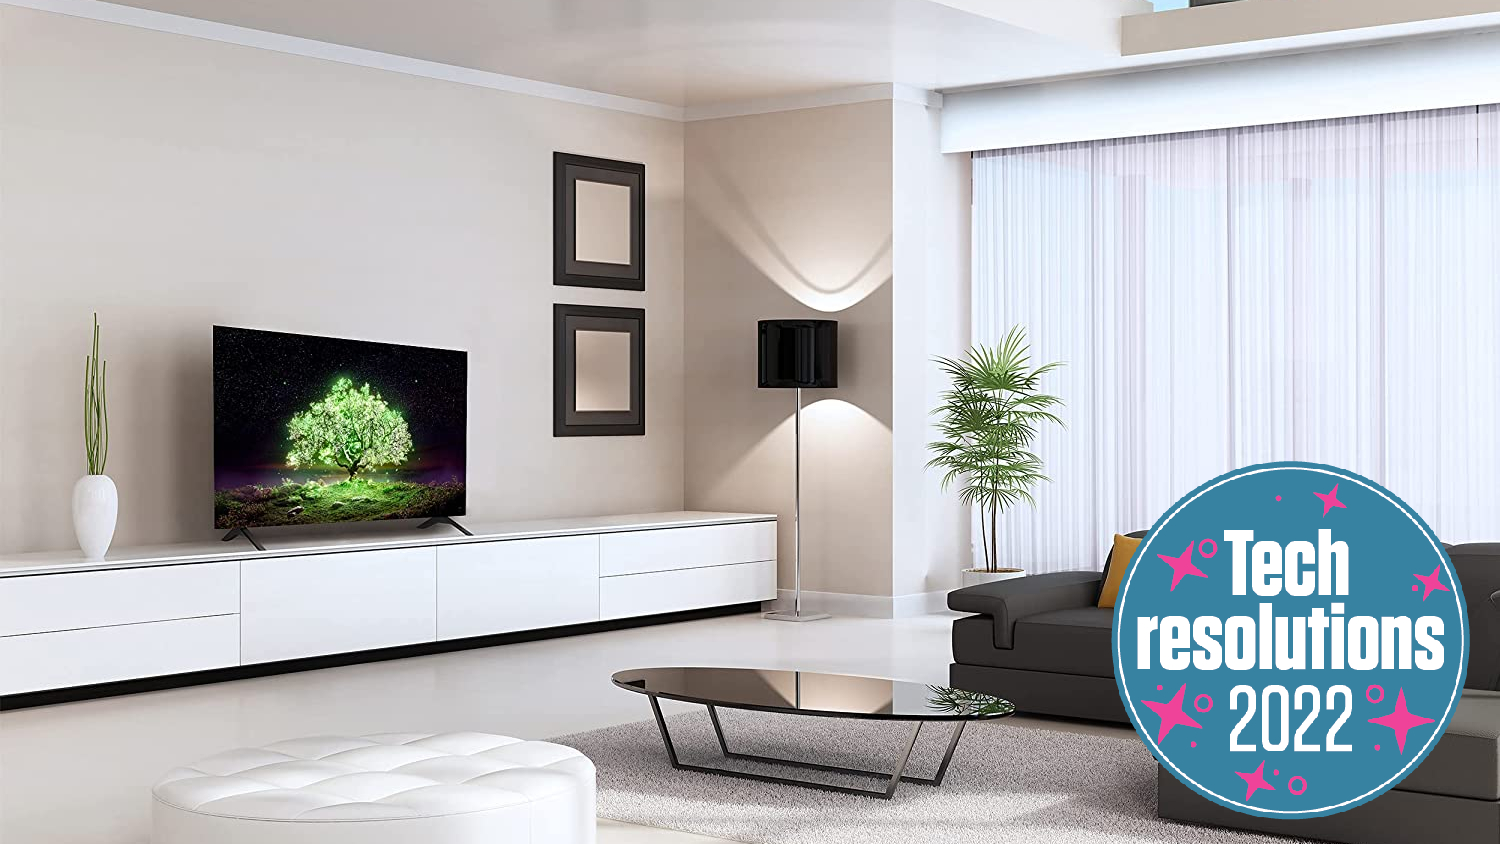 LG OLED TV in modern living room